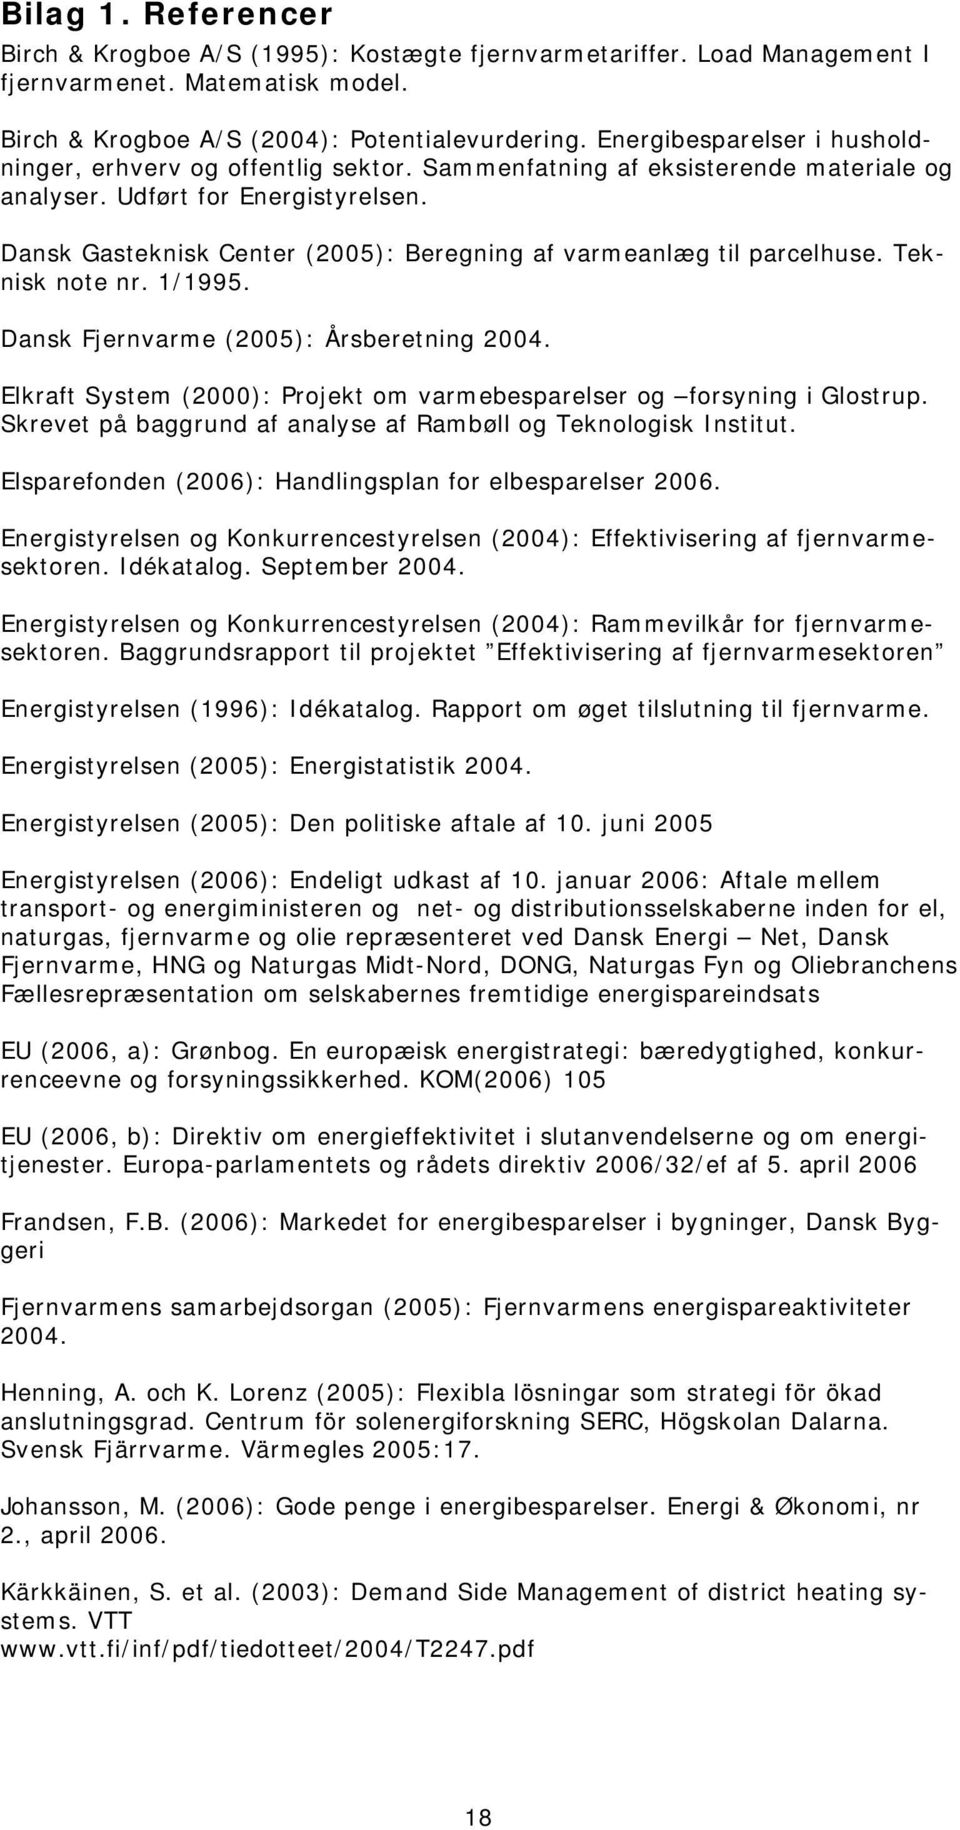 Dansk Gasteknisk Center (2005): Beregning af varmeanlæg til parcelhuse. Teknisk note nr. 1/1995. Dansk Fjernvarme (2005): Årsberetning 2004.